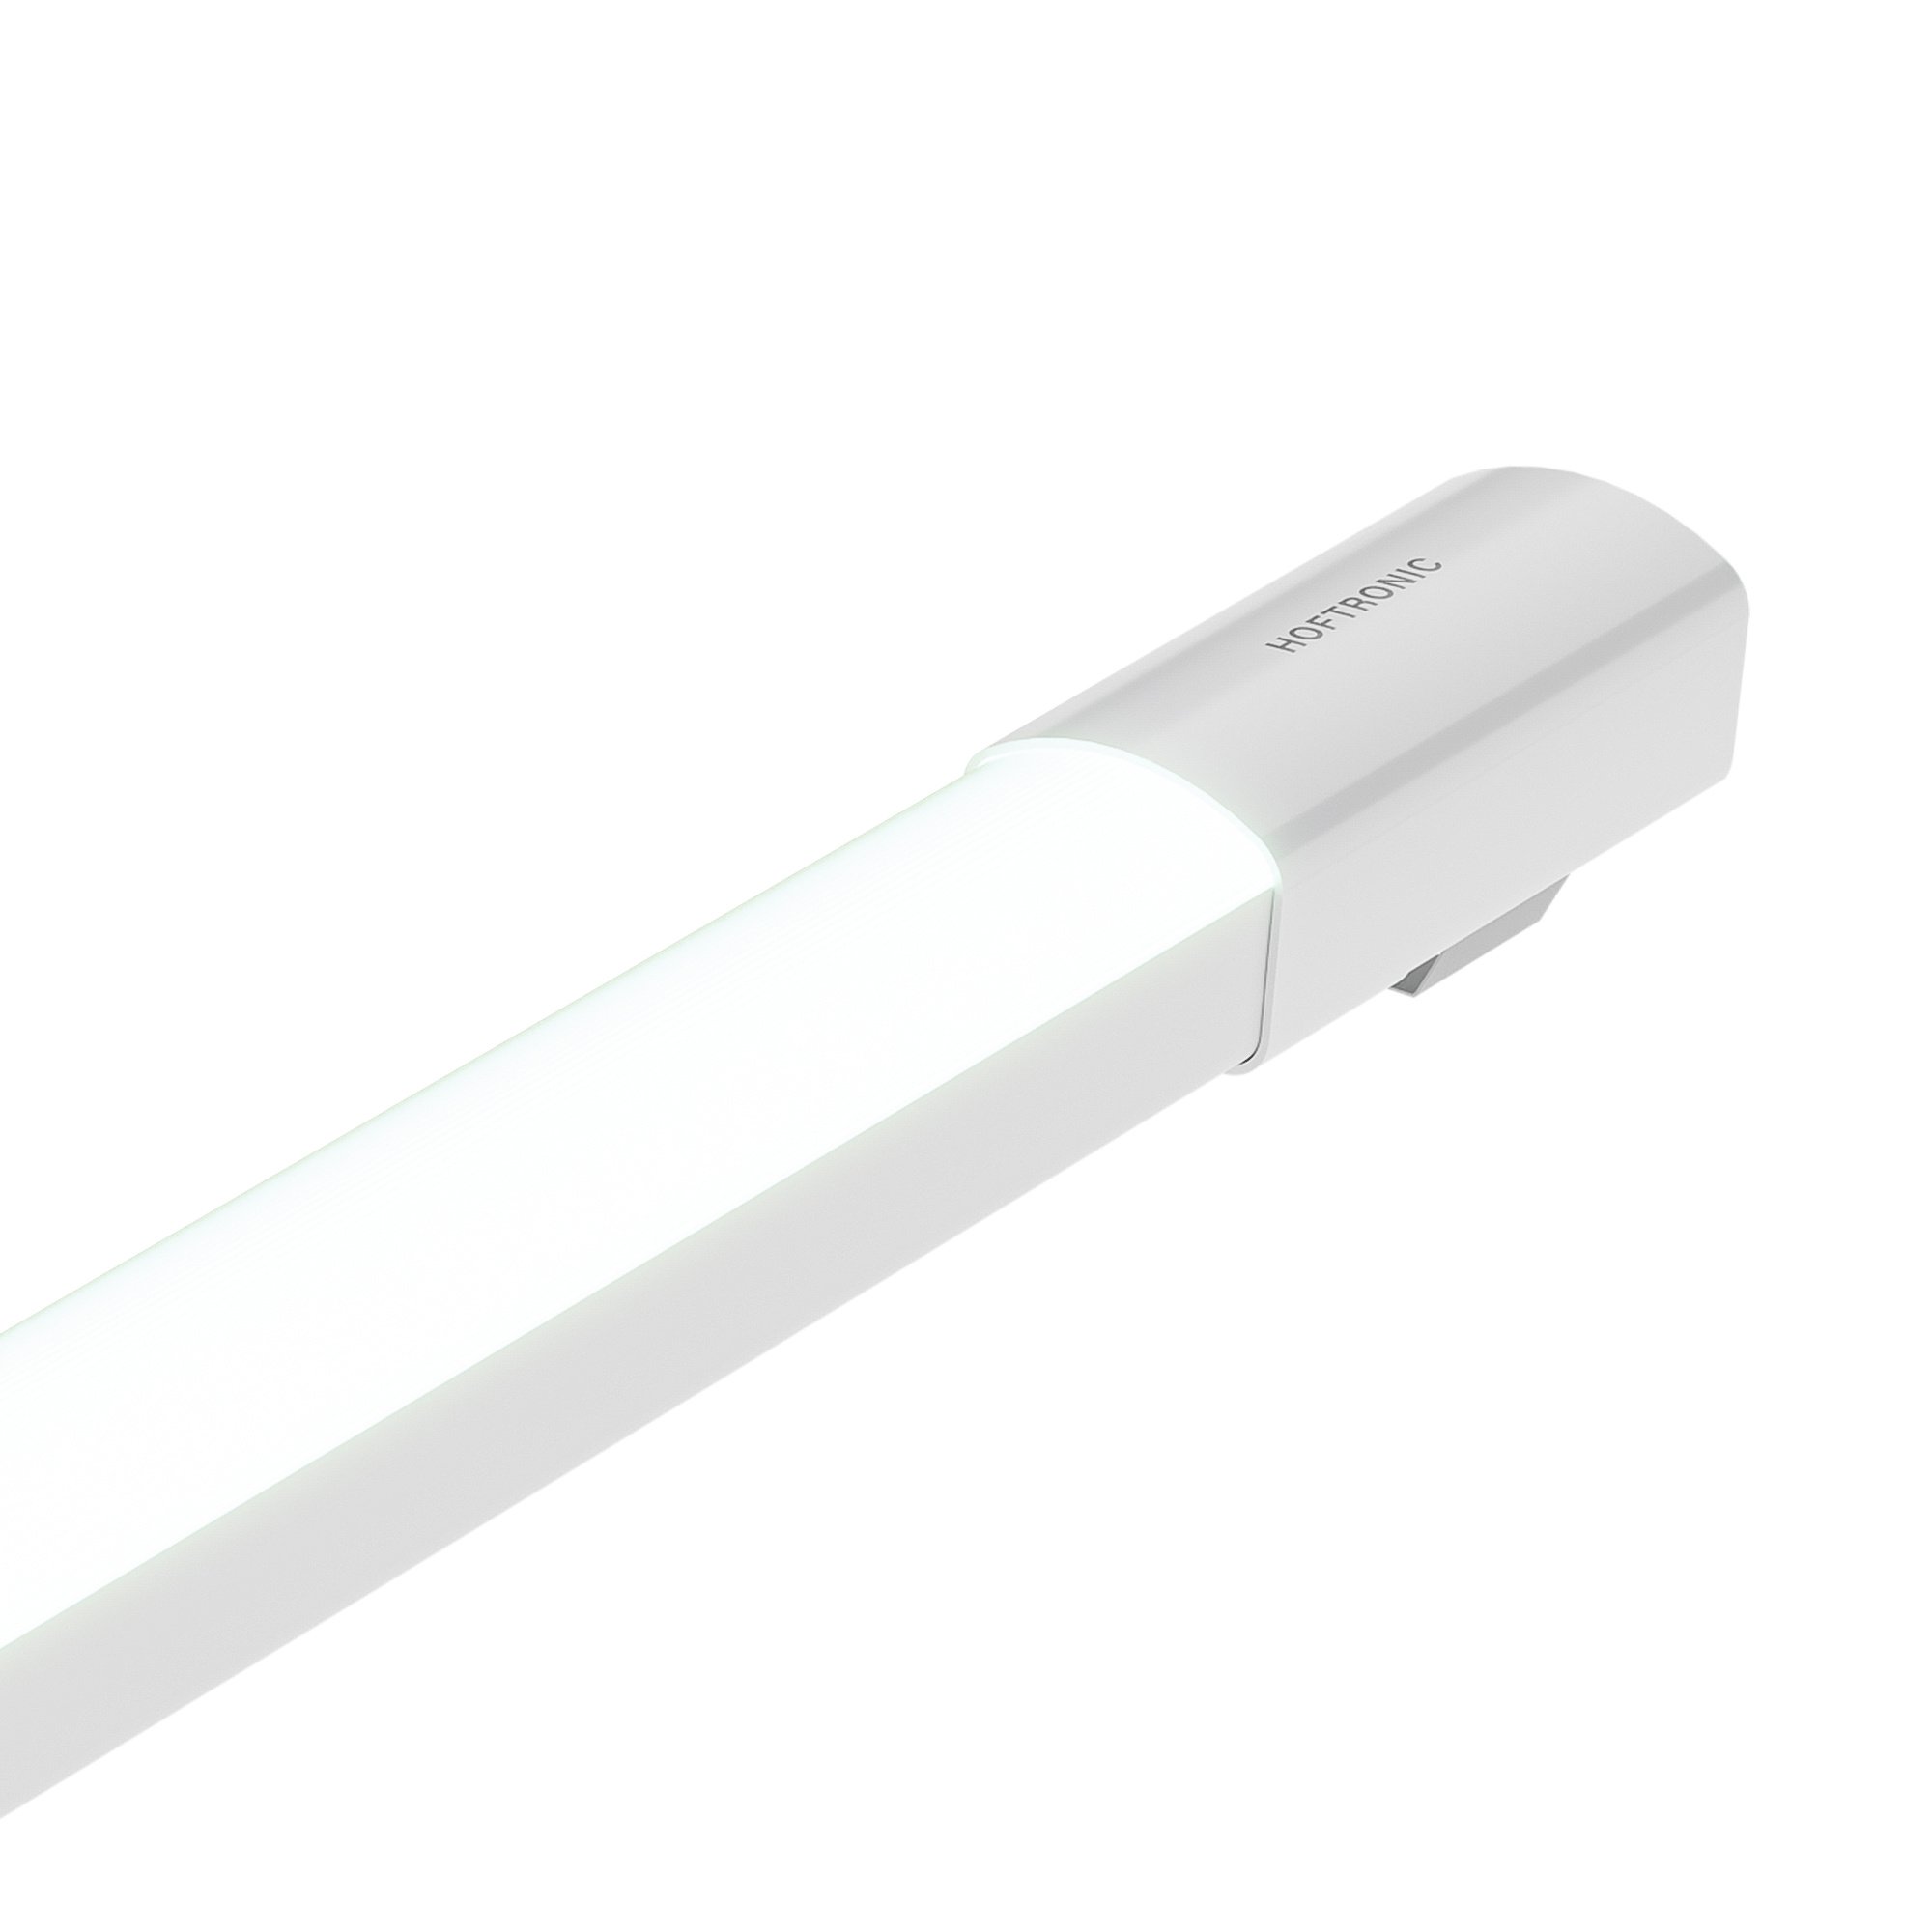 HOFTRONIC™ LED TL Armatuur 120 cm - R-Serie Tri-Proof - IP65 waterdicht - 36 Watt - 3600 Lumen - 100 lumen/watt - 6500K daglicht wit licht - Flikkervrij - Compleet